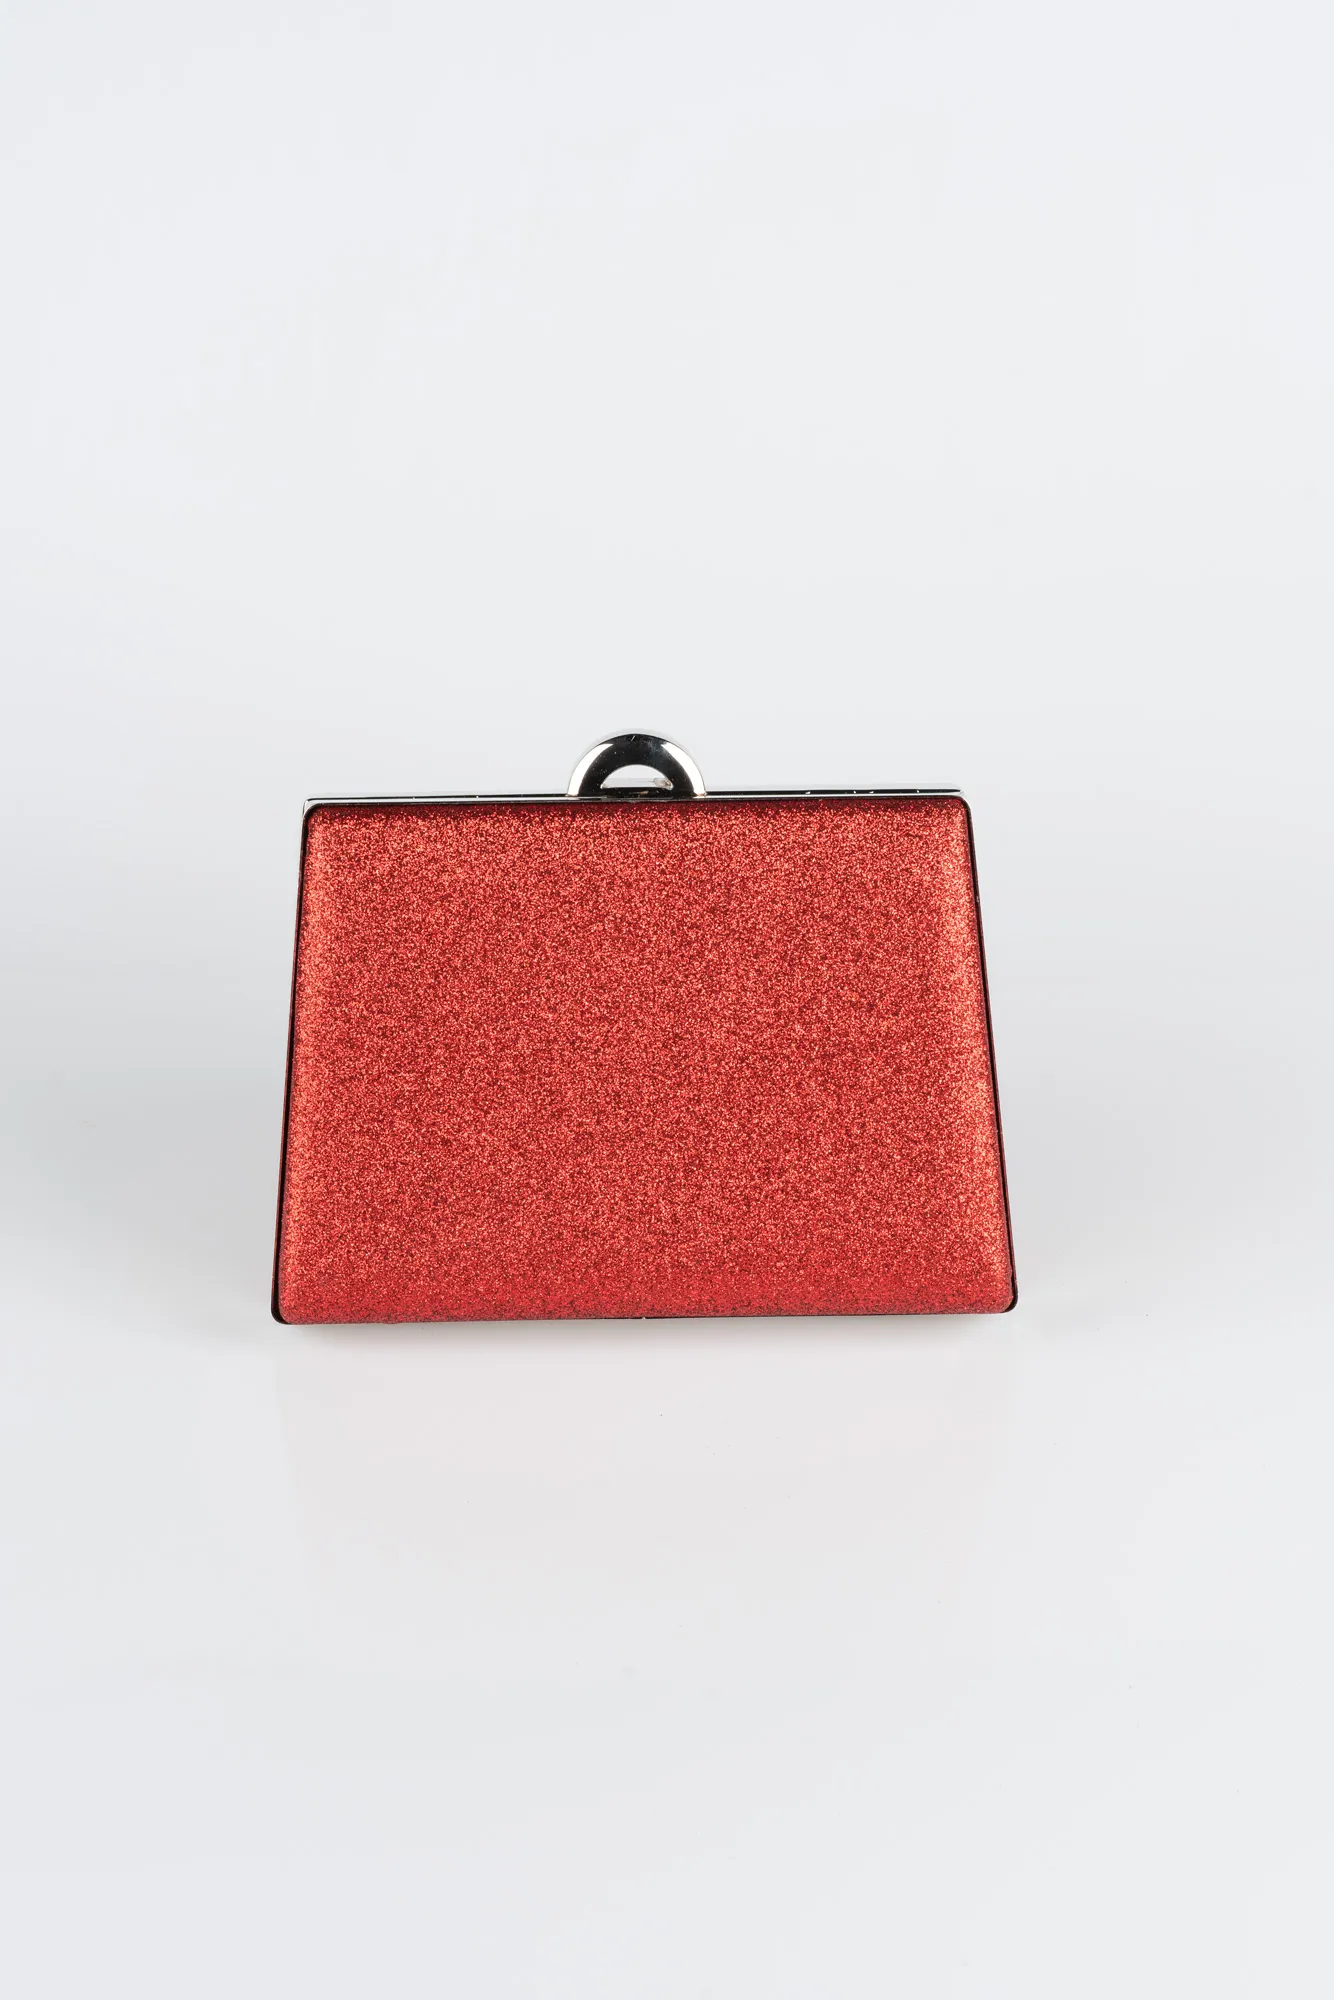 Red-Box Bag V249